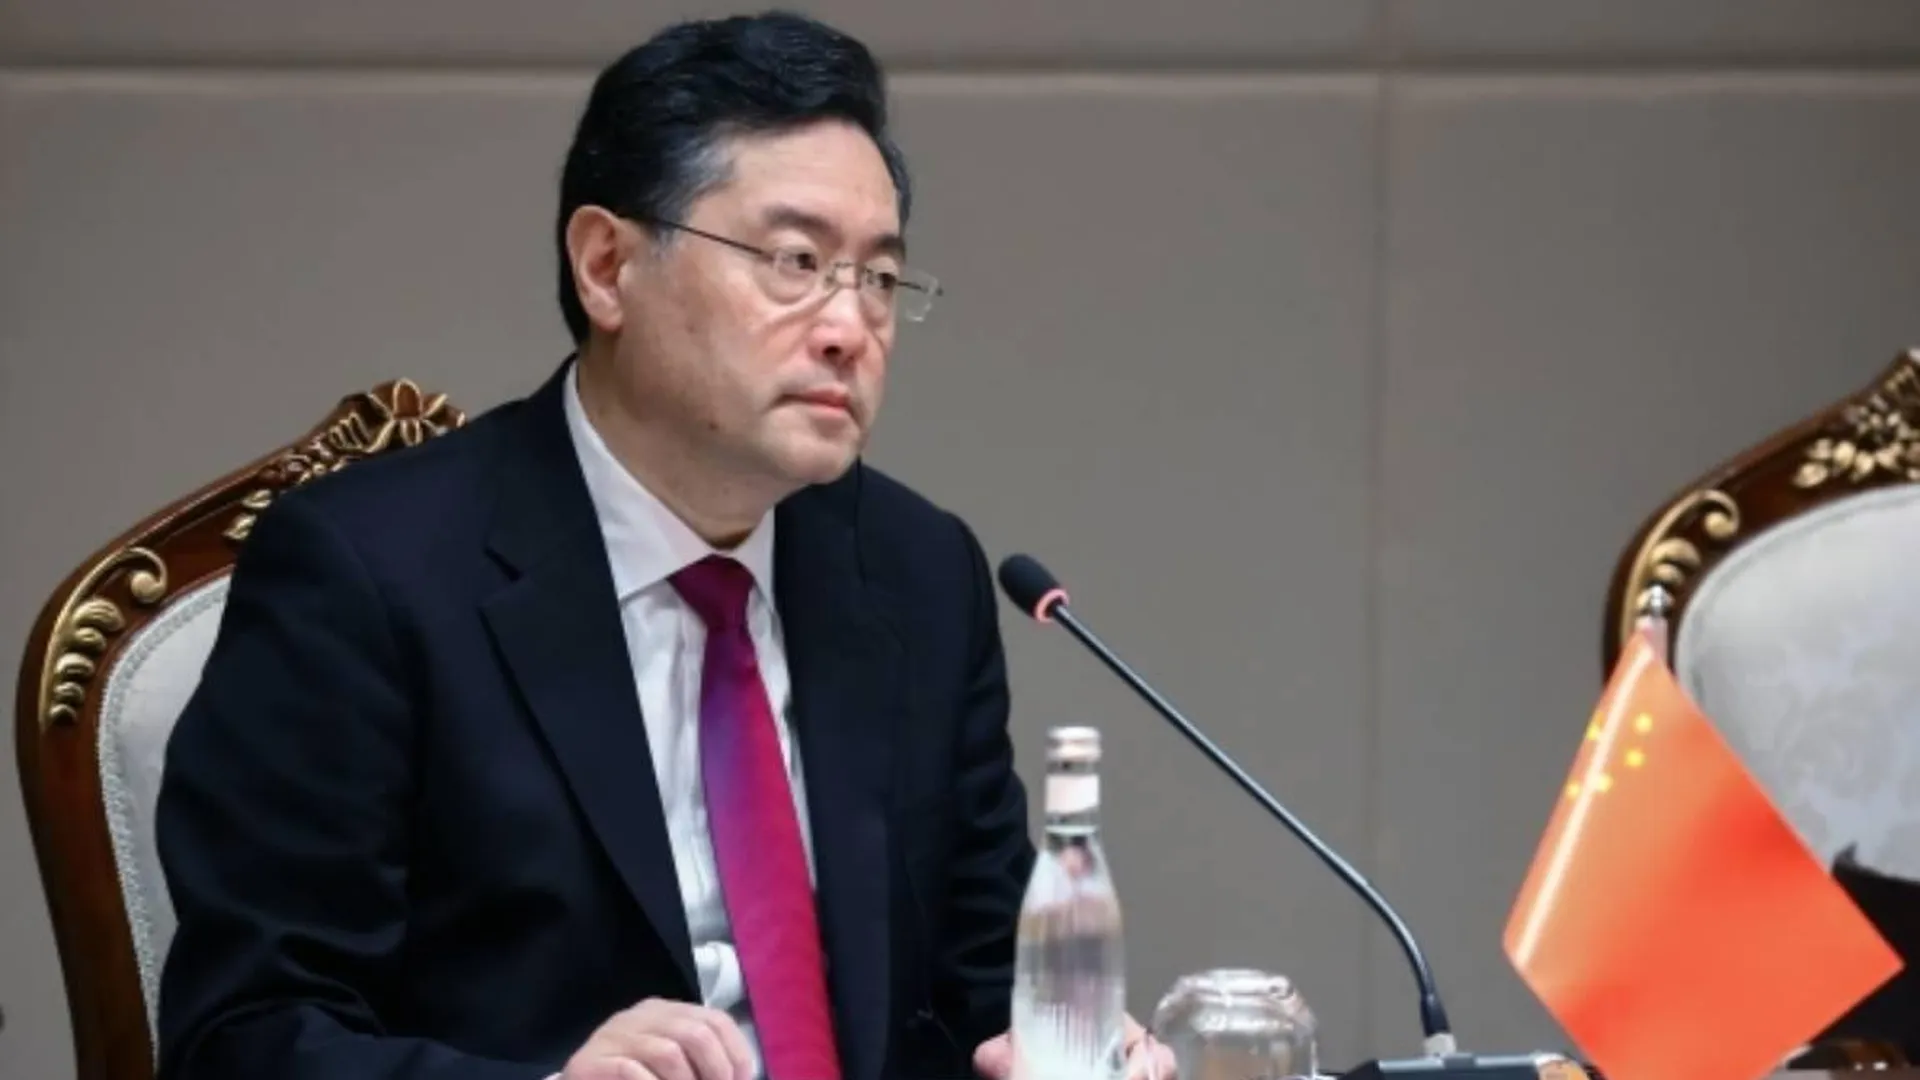 МИД КНР: Китай не будет поставлять оружие ни одной из сторон конфликта на Украине